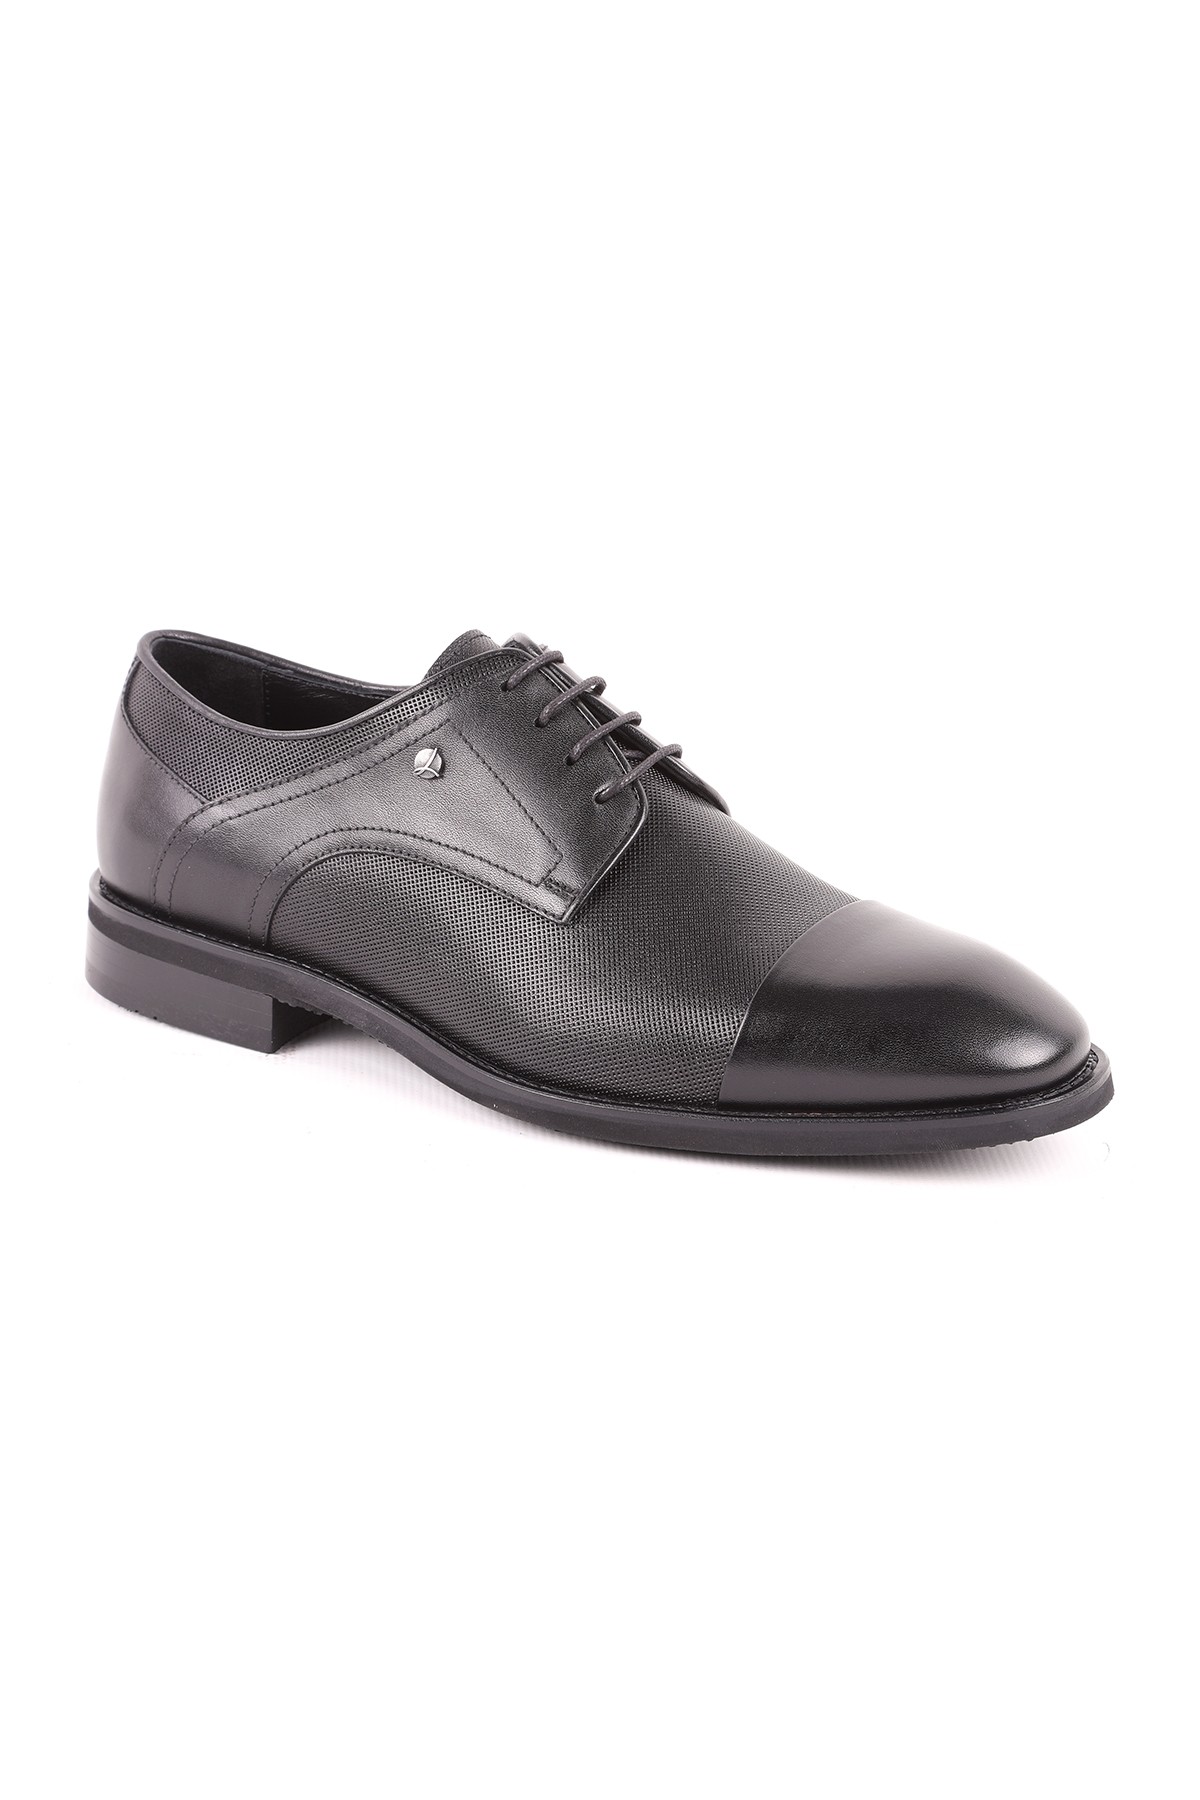 Libero L5182 Deri Erkek Klasik Ayakkabı - SIYAH